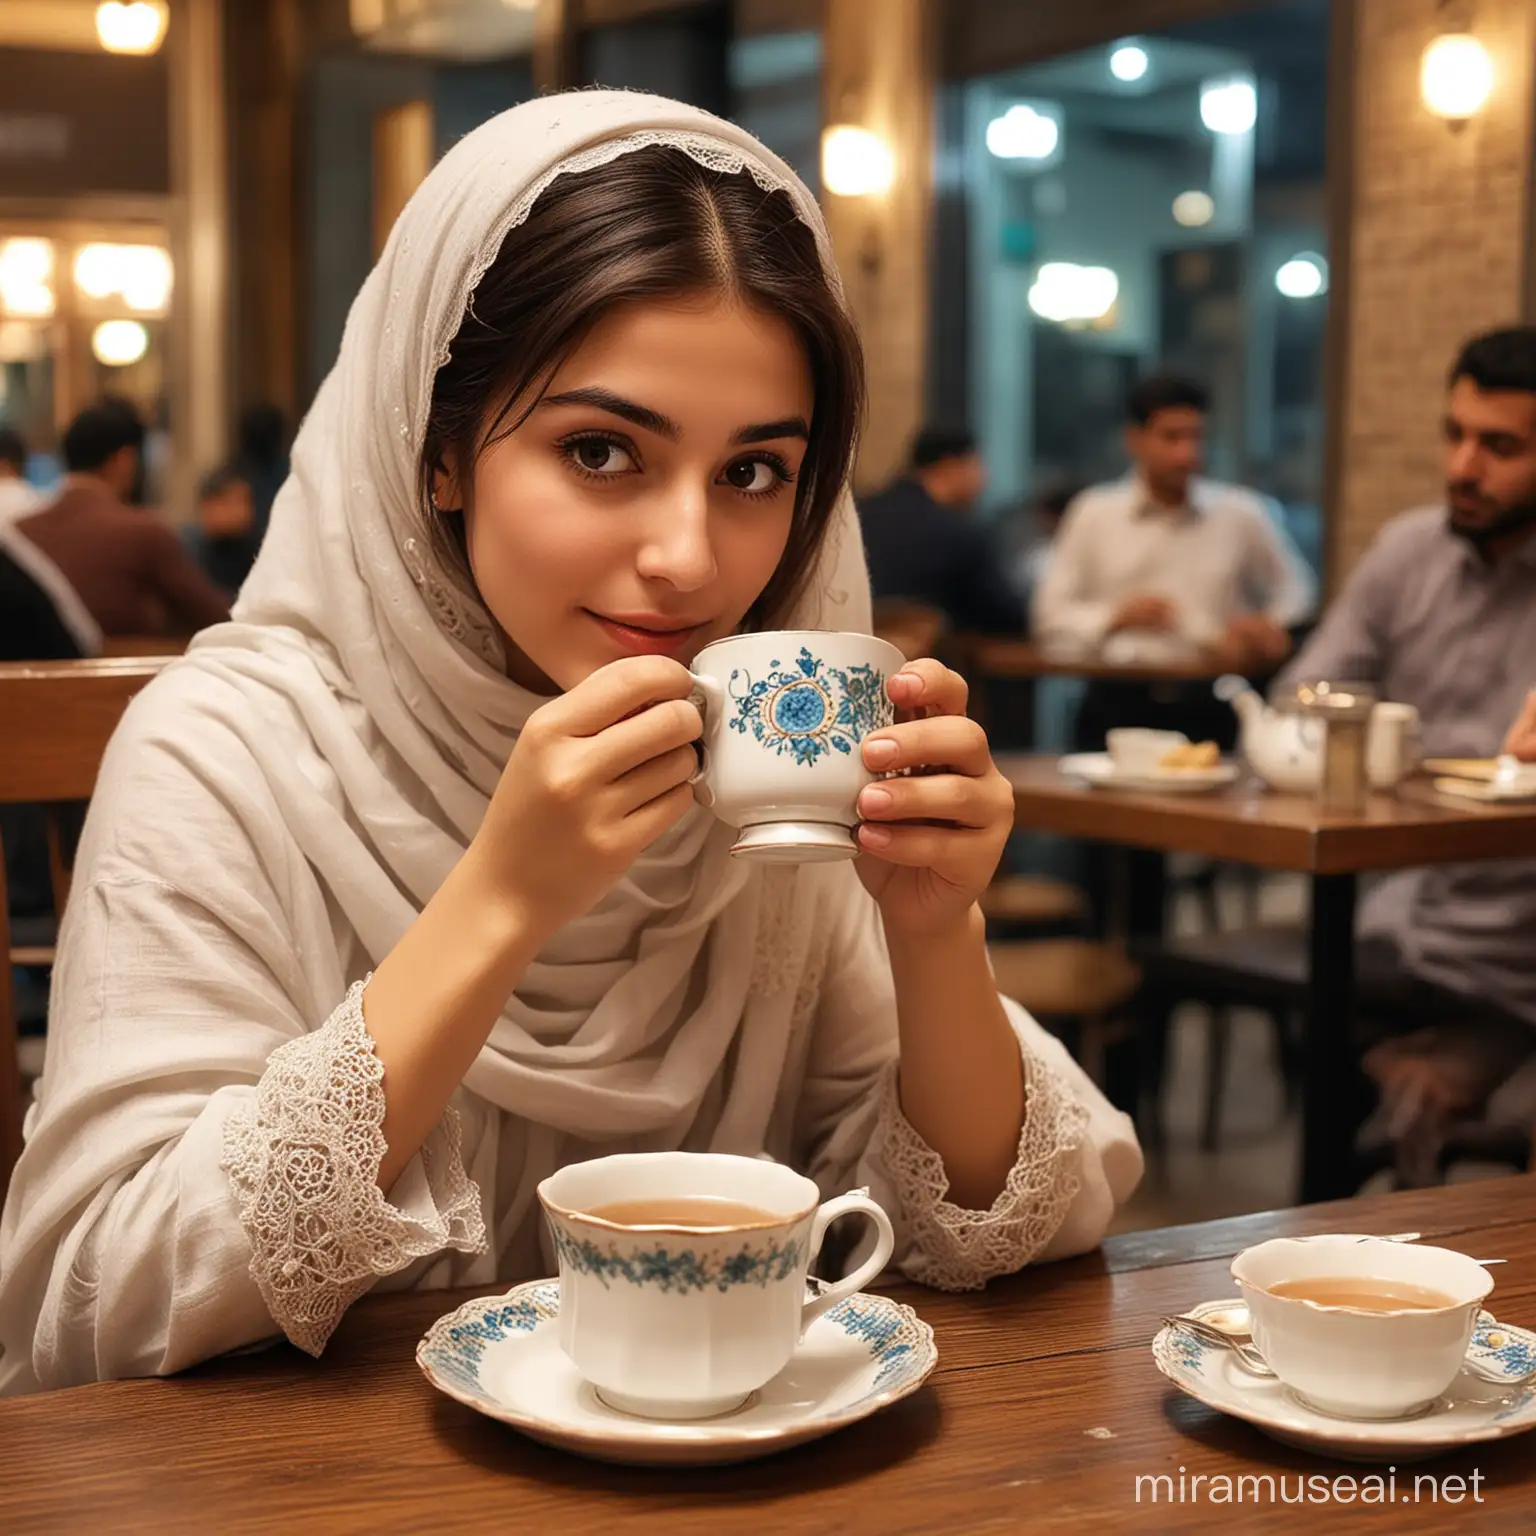 İftardan sonra çay içen bir kız, 
modern zamandan bir resim olsun, 
Kafede olsun 
